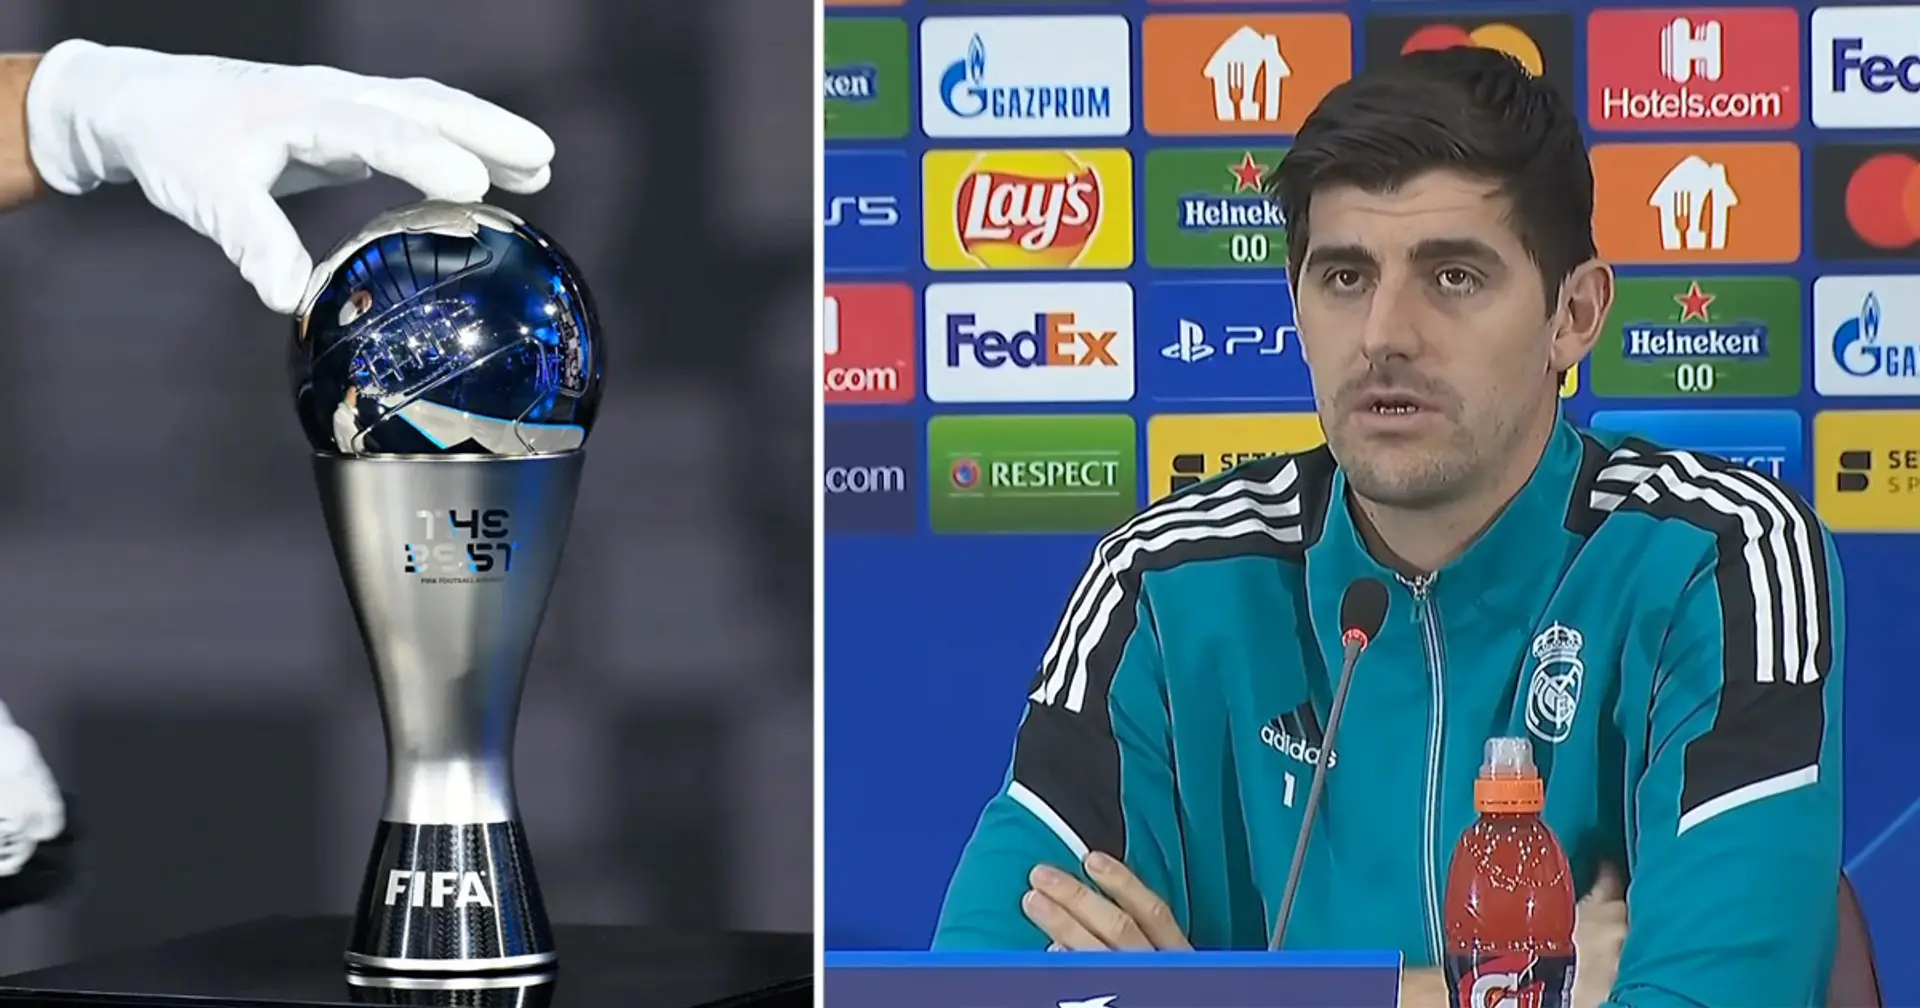 Courtois: 'I think I'm not nominated for best goalkeeper because I criticized UEFA'